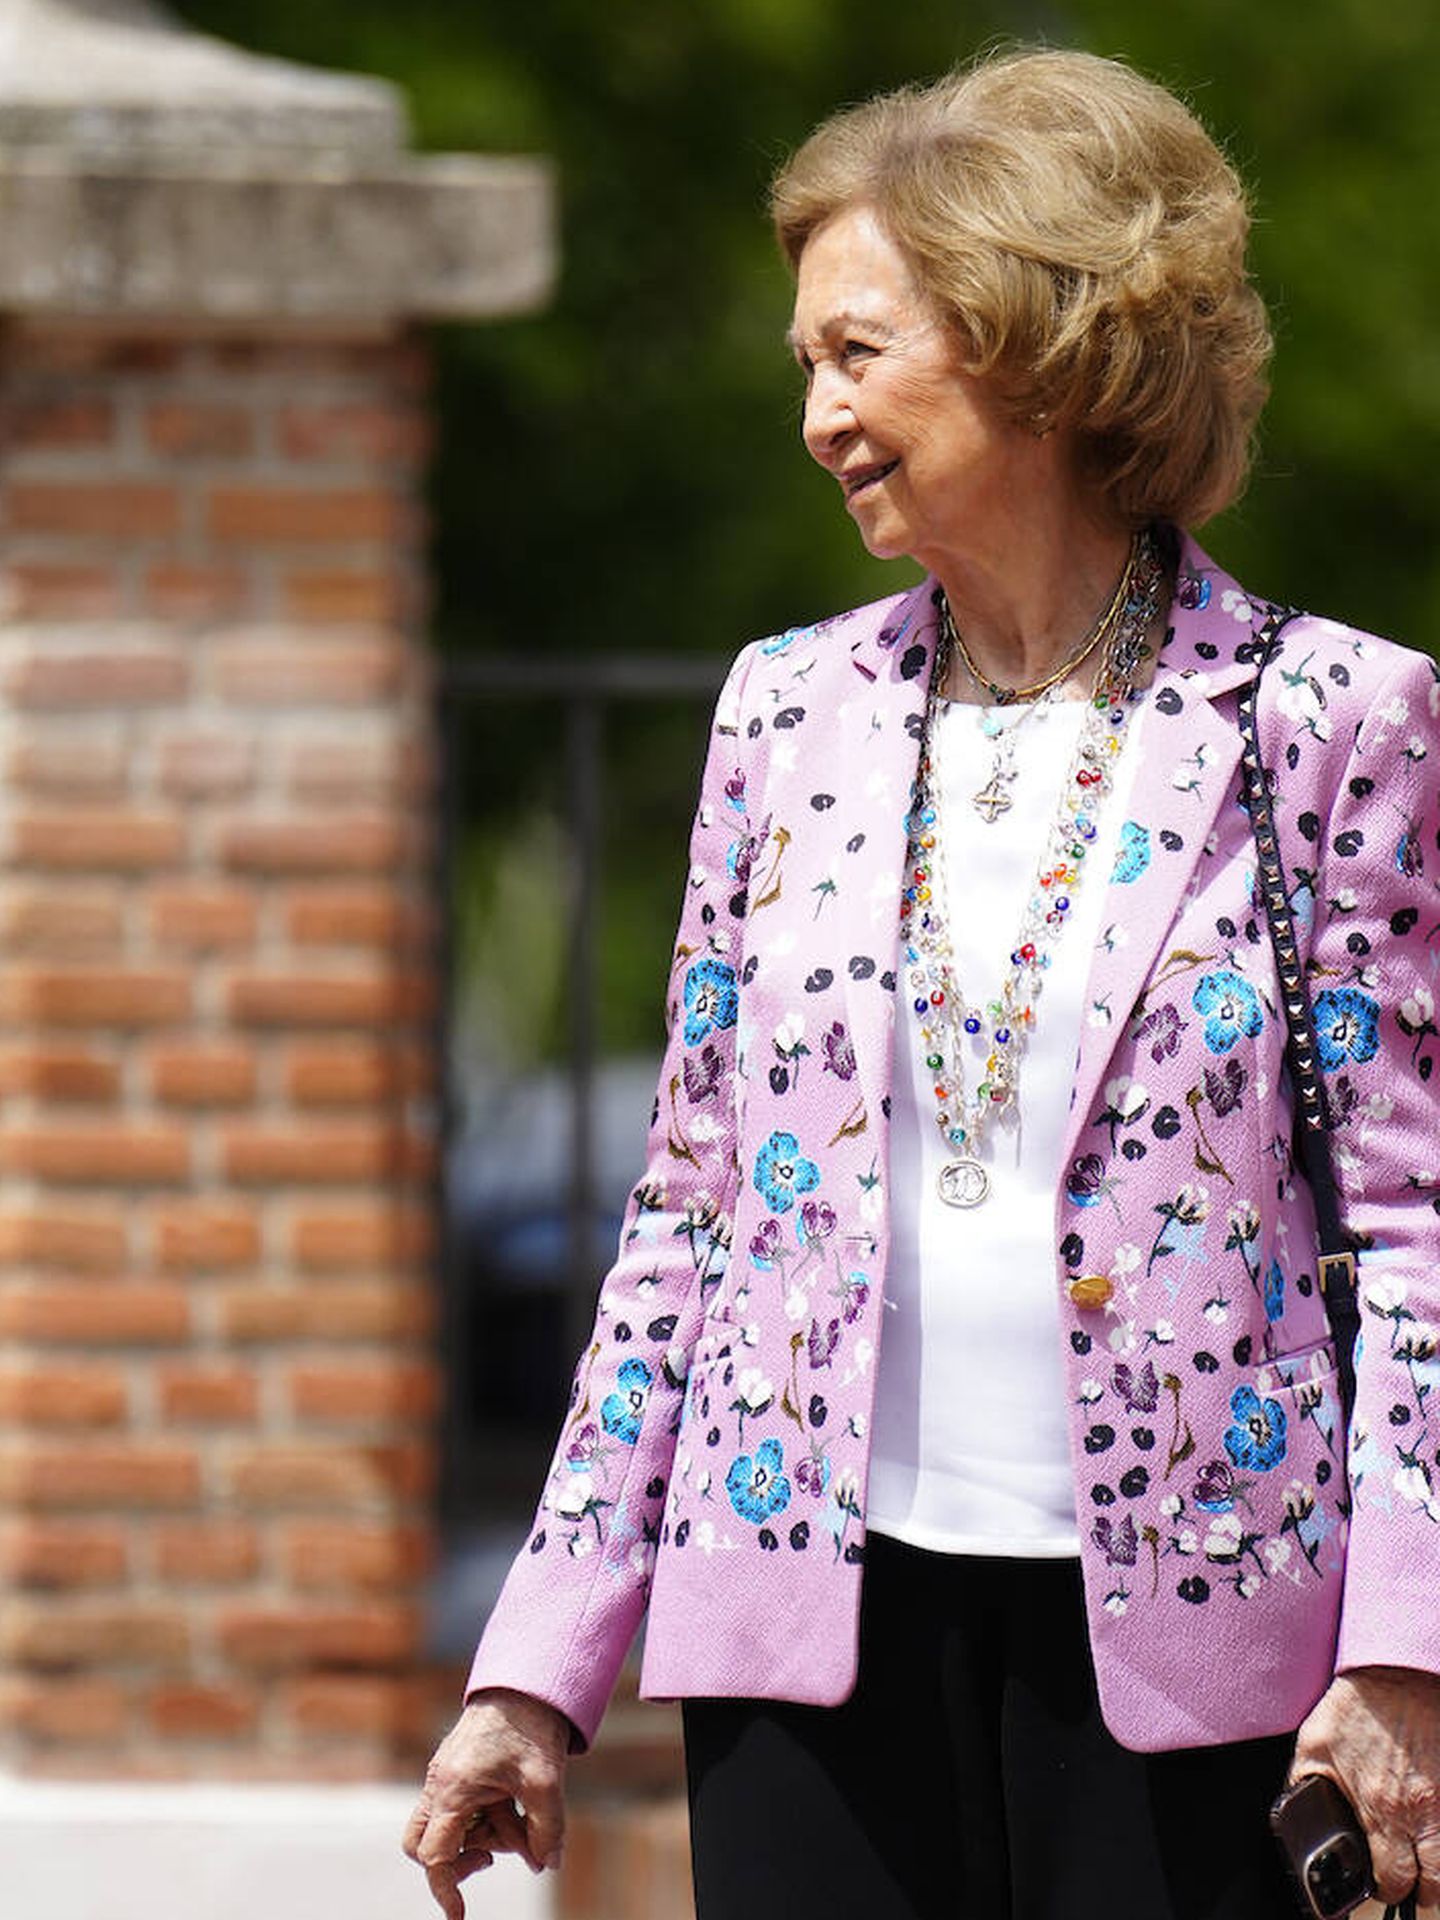 La alegre blazer que ha reciclado la reina Sofía para la ocasión. (LP)